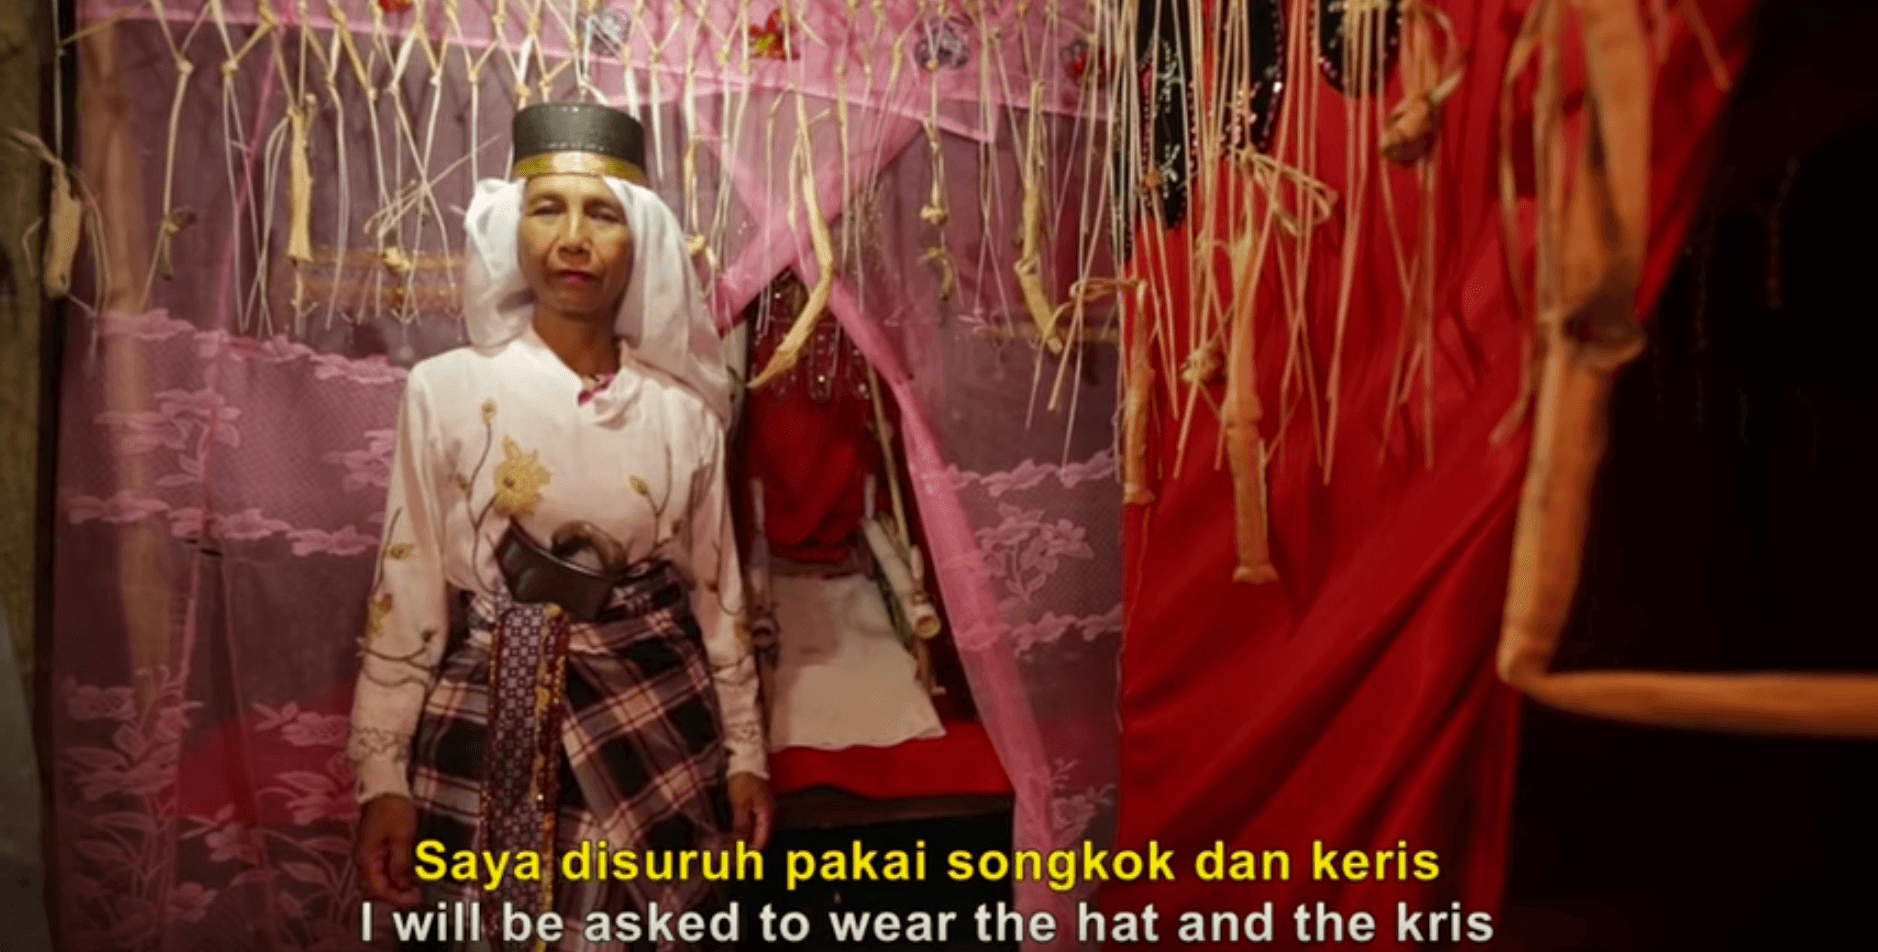 Pemutaran film dan diskusi tentang gender di Surabaya dibatalkan